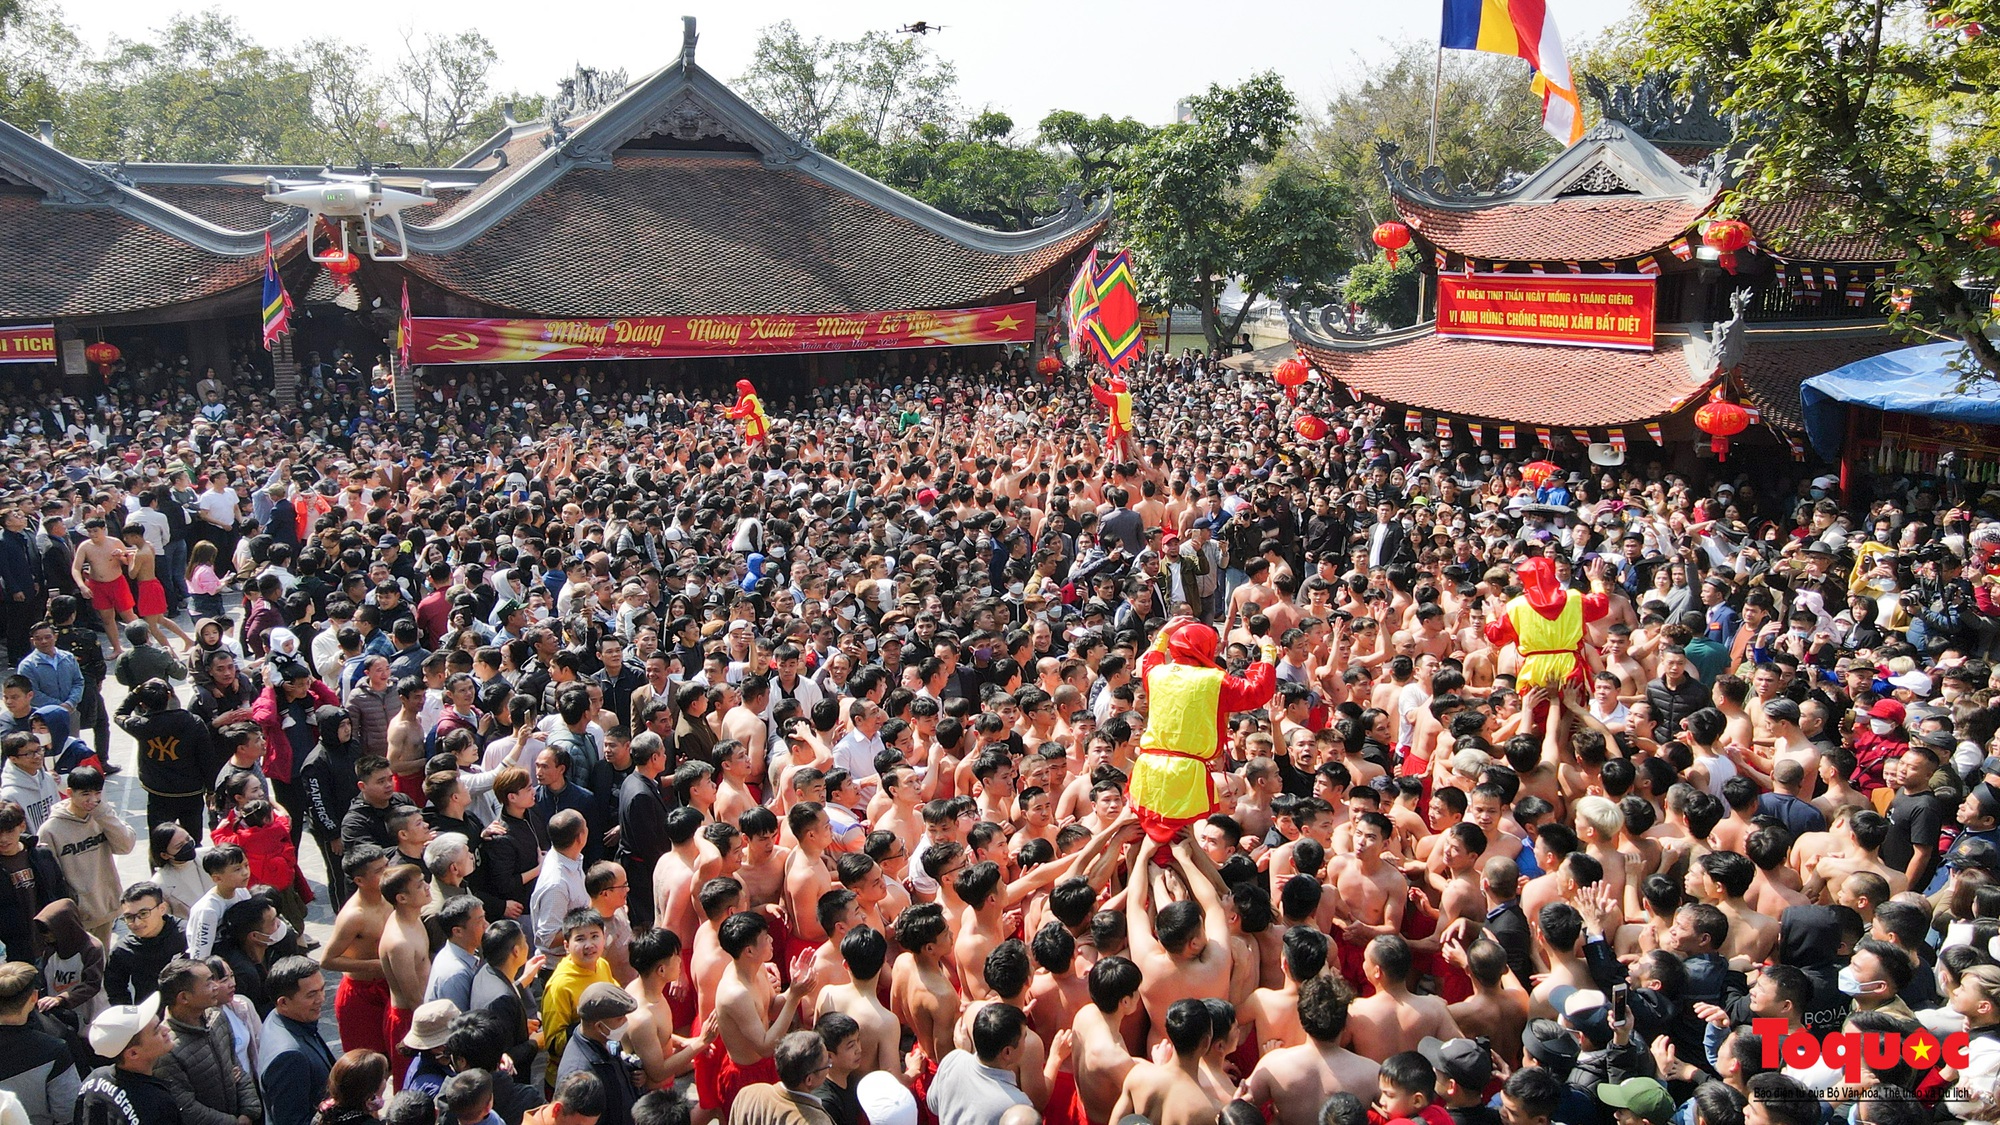 Tưng bừng, rộn ràng lễ hội rước pháo khổng lồ ở làng Đồng Kỵ - Ảnh 12.